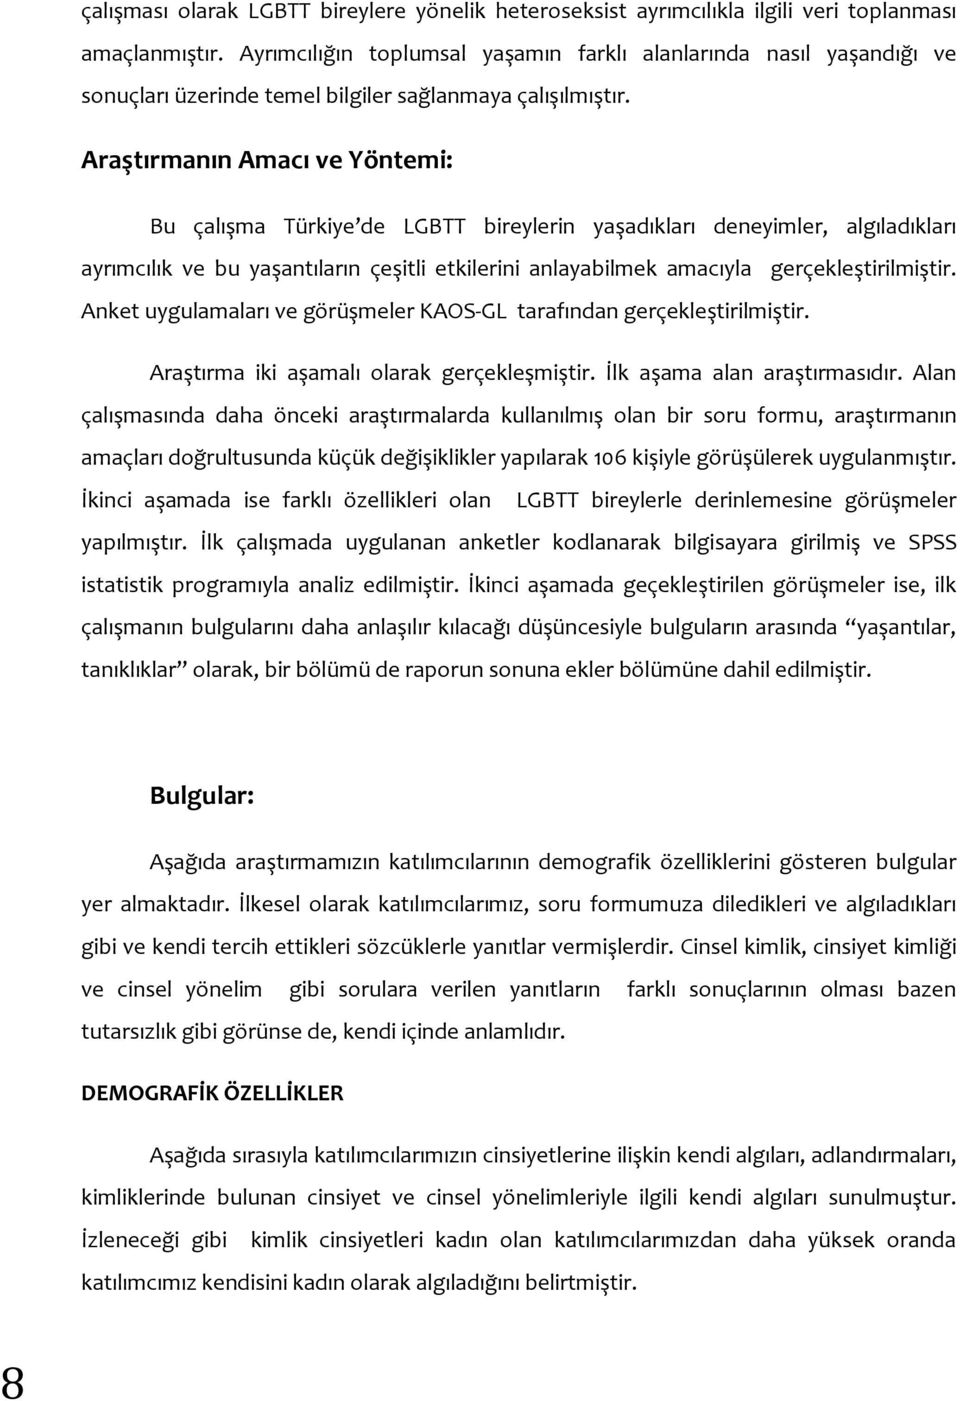 Araştırmanın Amacı ve Yöntemi: Bu çalışma Türkiye de LGBTT bireylerin yaşadıkları deneyimler, algıladıkları ayrımcılık ve bu yaşantıların çeşitli etkilerini anlayabilmek amacıyla gerçekleştirilmiştir.